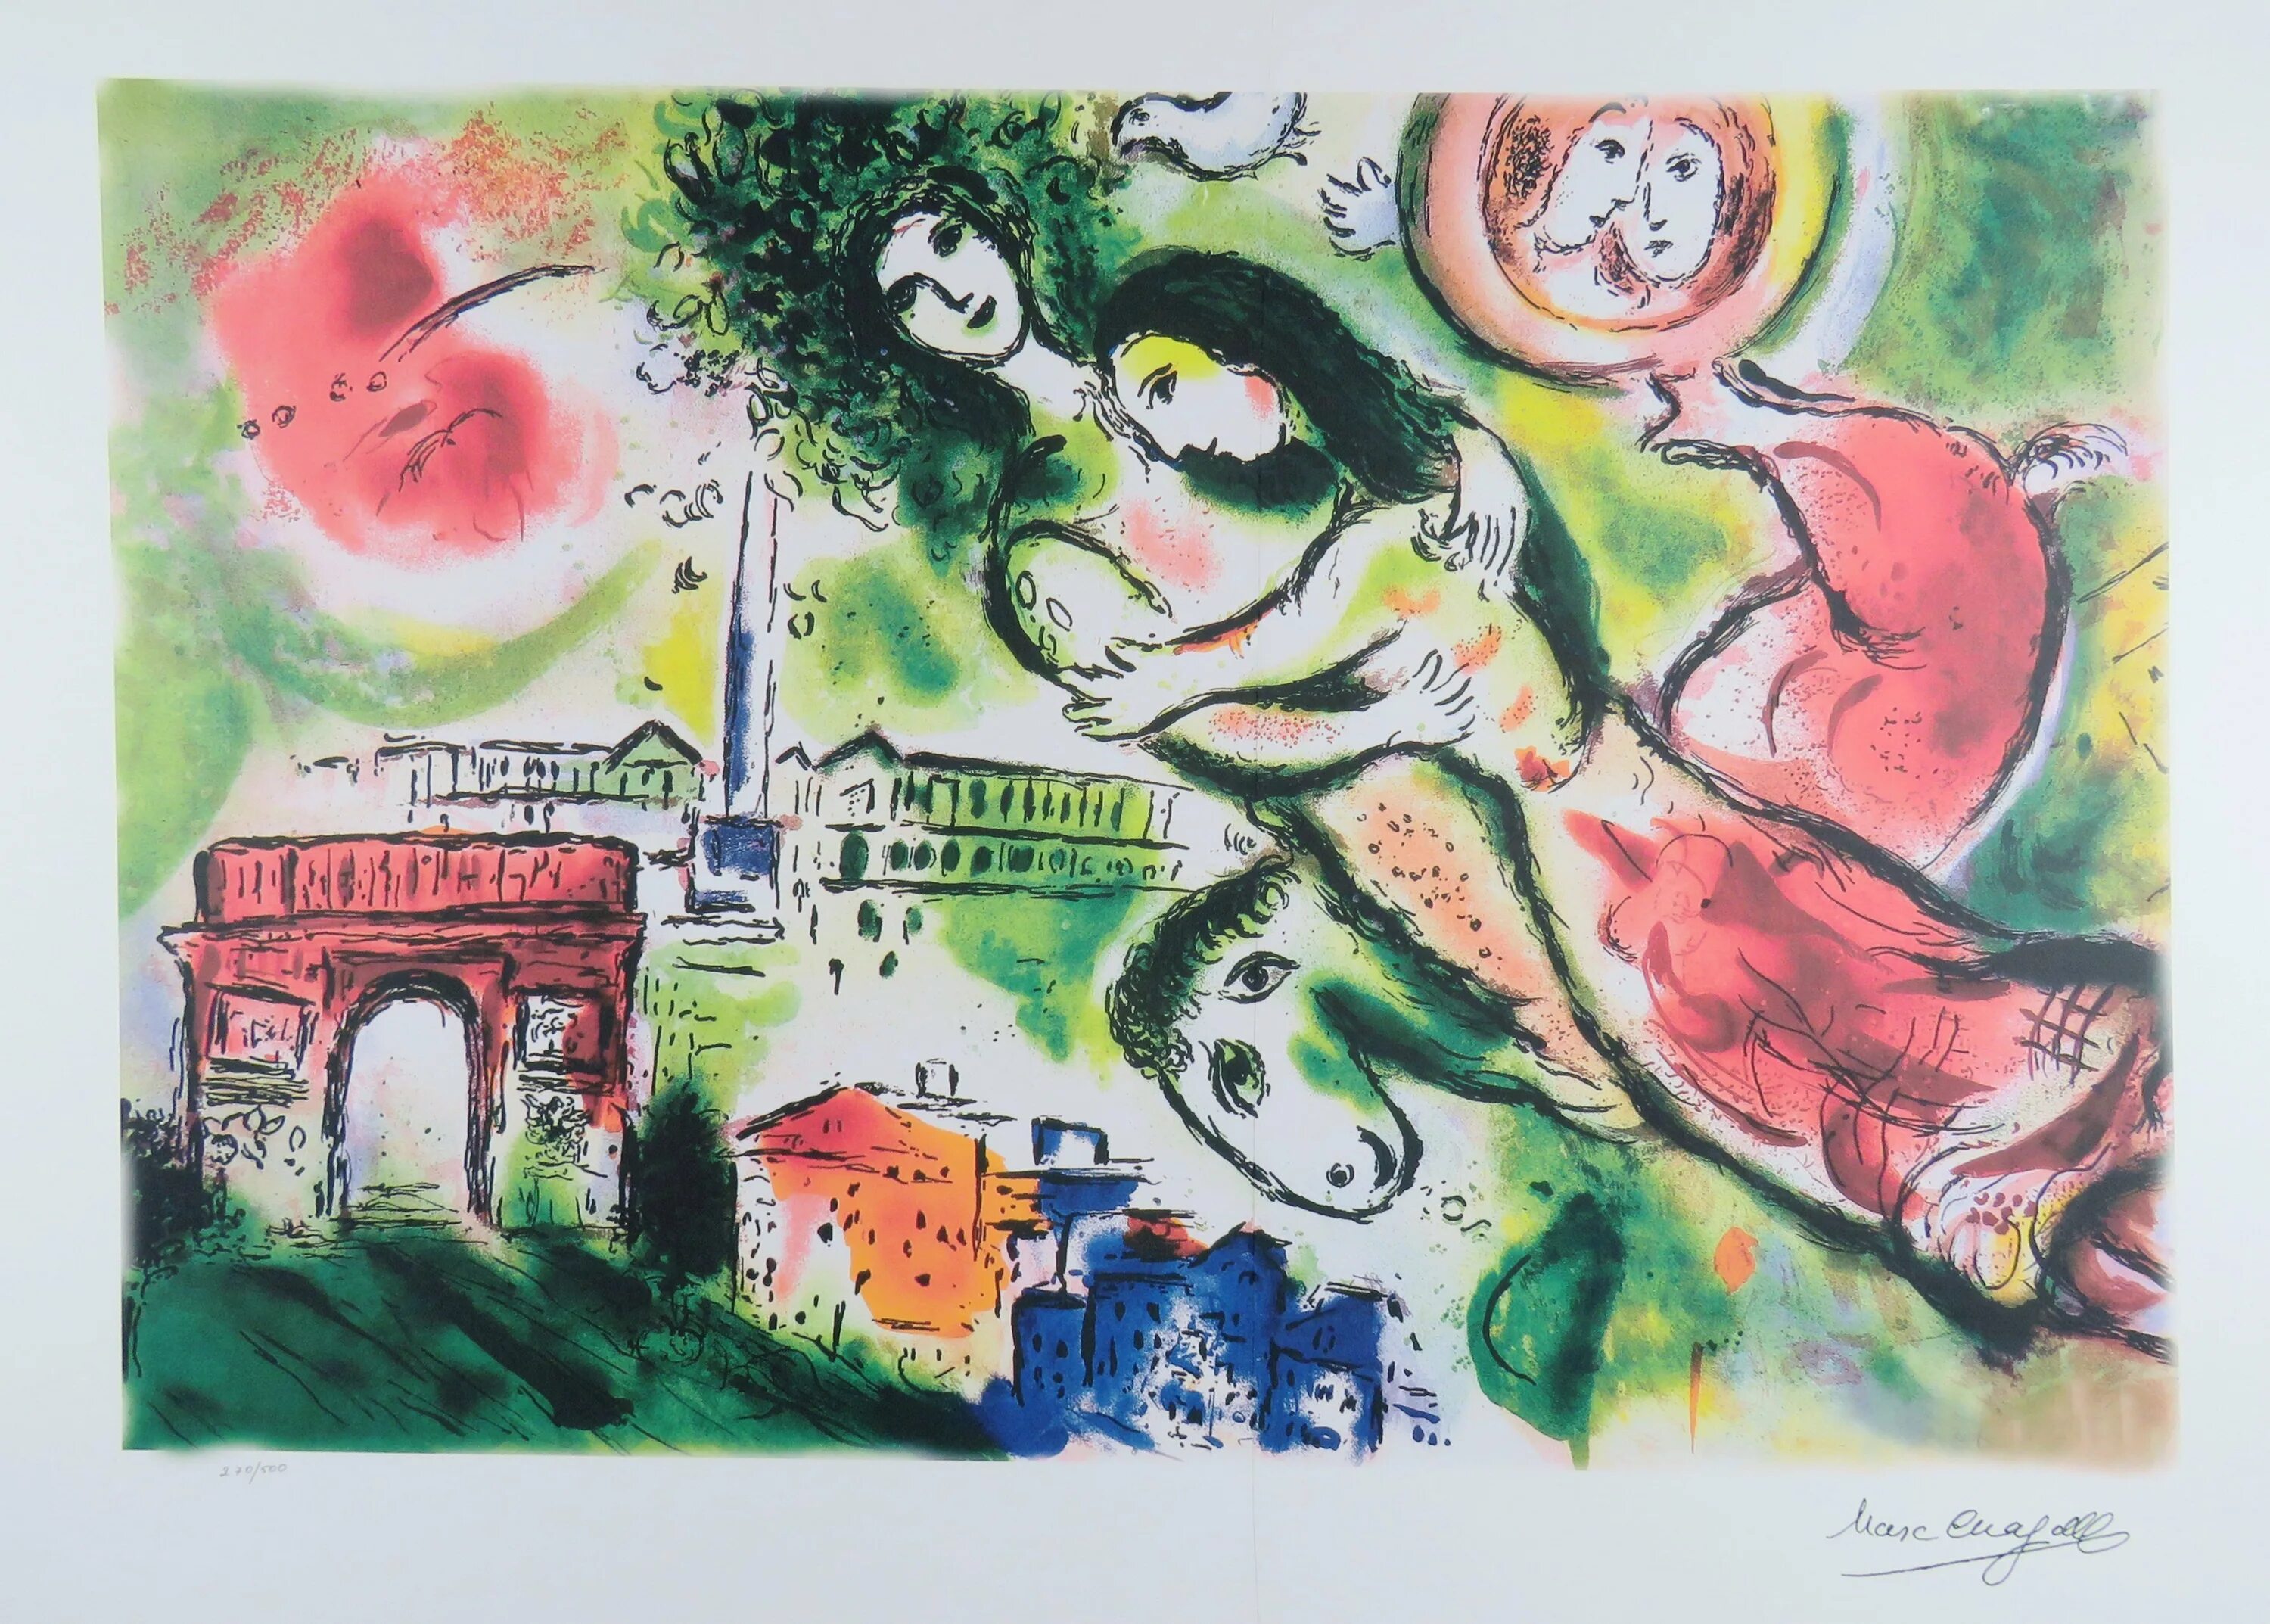 Рисунки марка Шагала.